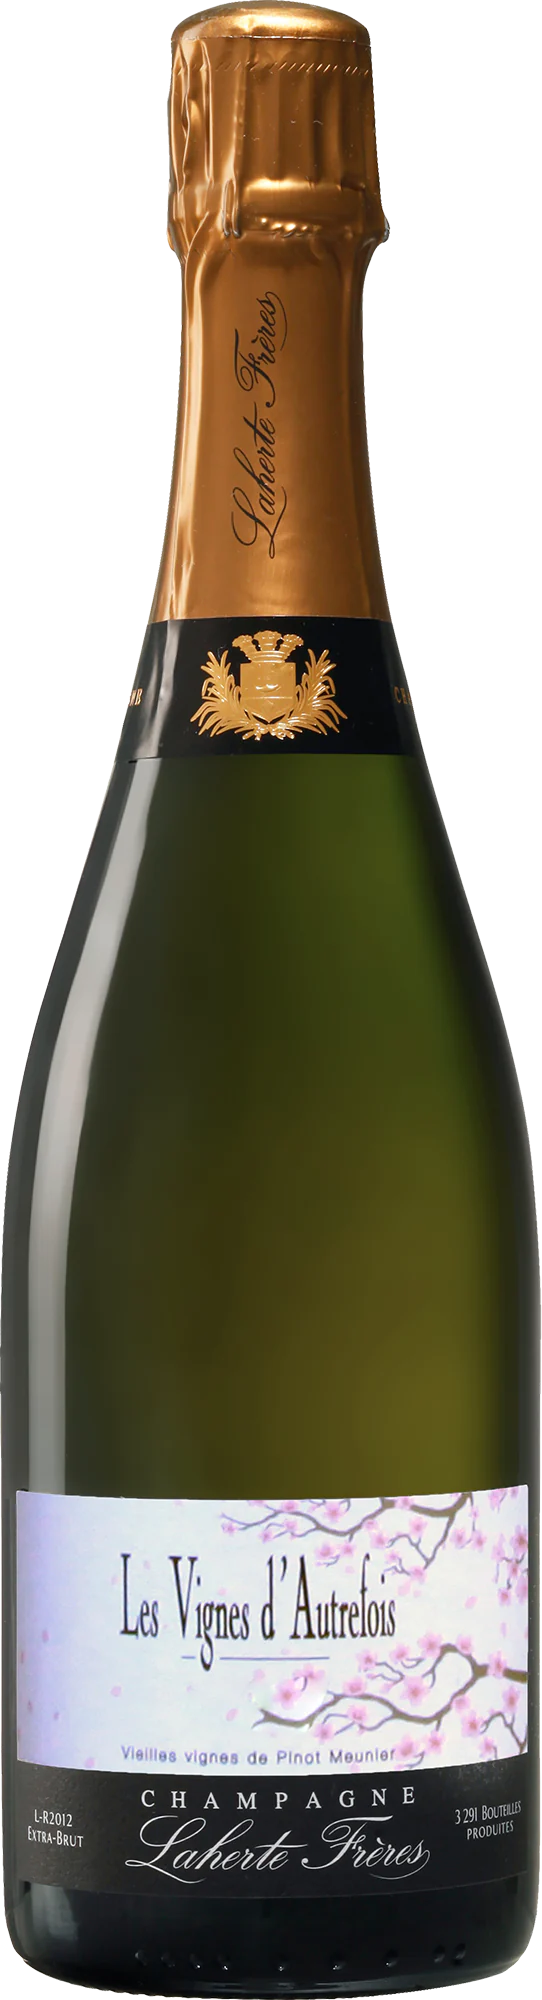 Champagne Laherte Frères - Les Vignes d'Autrefois / 2019 / 750mL